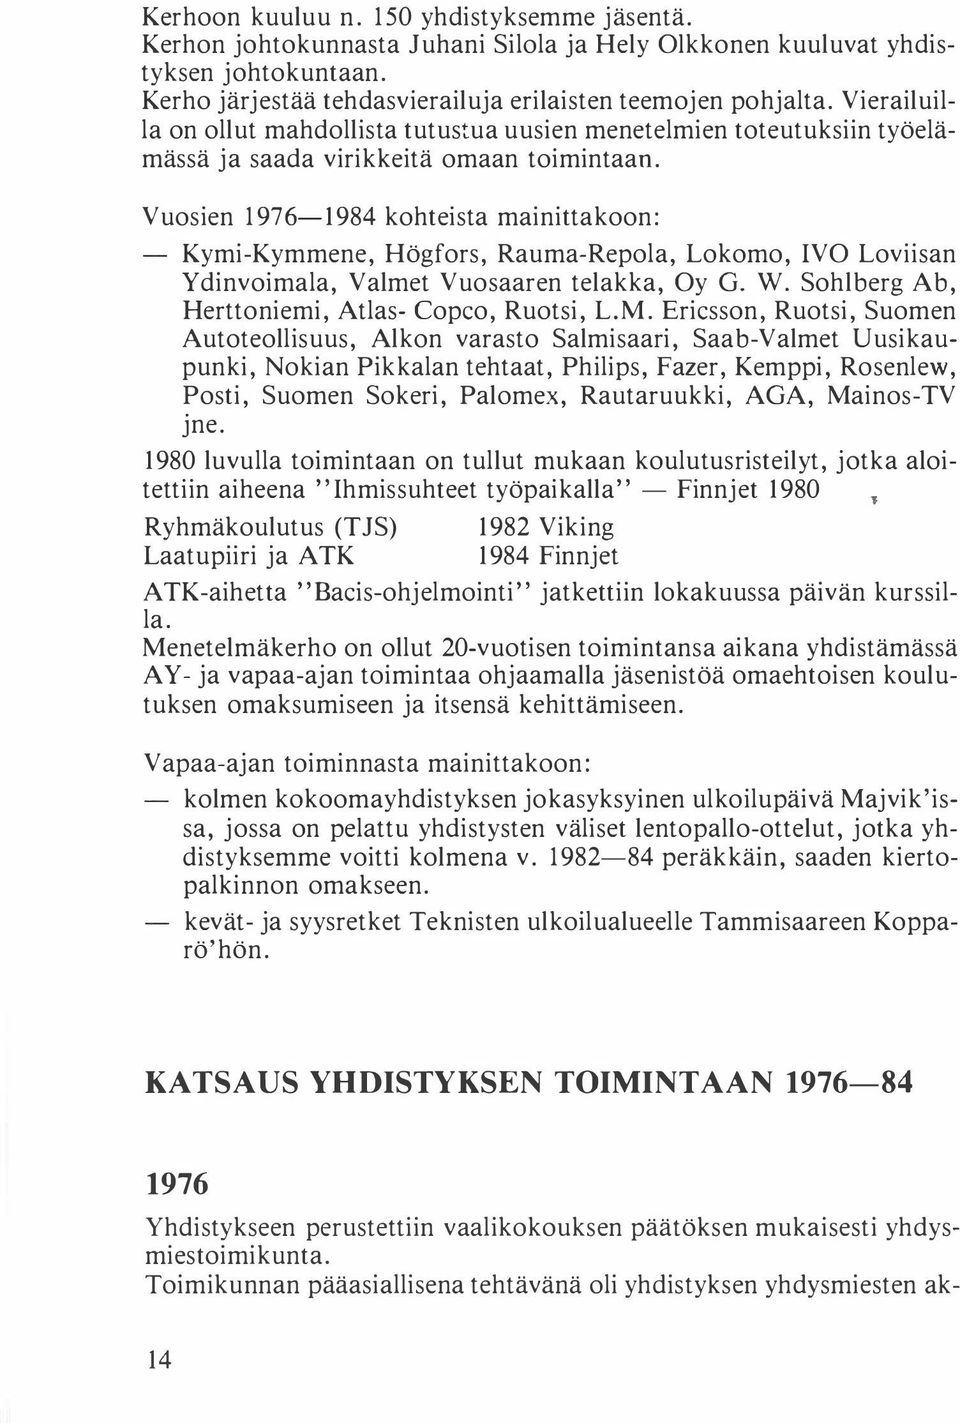 Vuosien 1976-1984 kohteista mainittakoon: Kymi-Kymmene, Högfors, Rauma-Repola, Lokomo, IVO Loviisan Ydinvoimala, Valmet Vuosaaren telakka, Oy G. W. Sohlberg Ab, Herttoniemi, Atlas- Copco, Ruotsi, L.M.